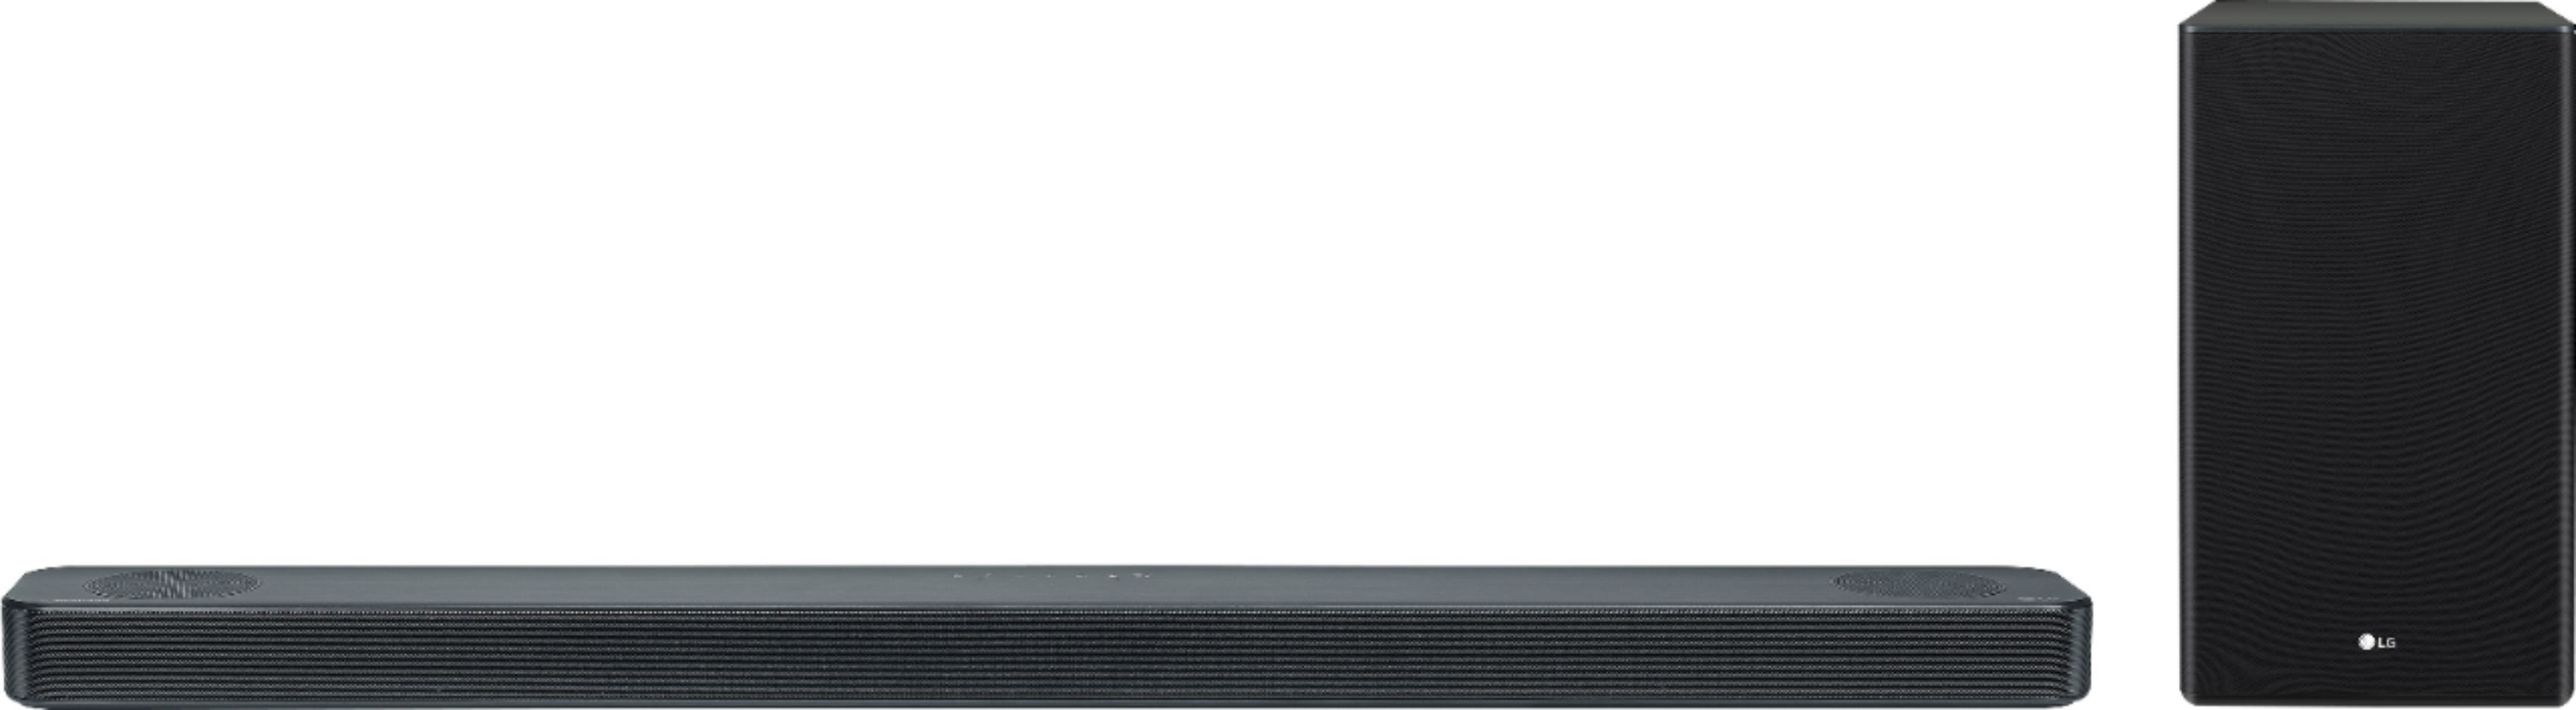 LG Barra de Sonido Inteligente SL8YG de 440W 3.1.2 con sonido envolvente Dolby  Atmos, dts:X, Hi-Res, Meridian y Asistente de Google.